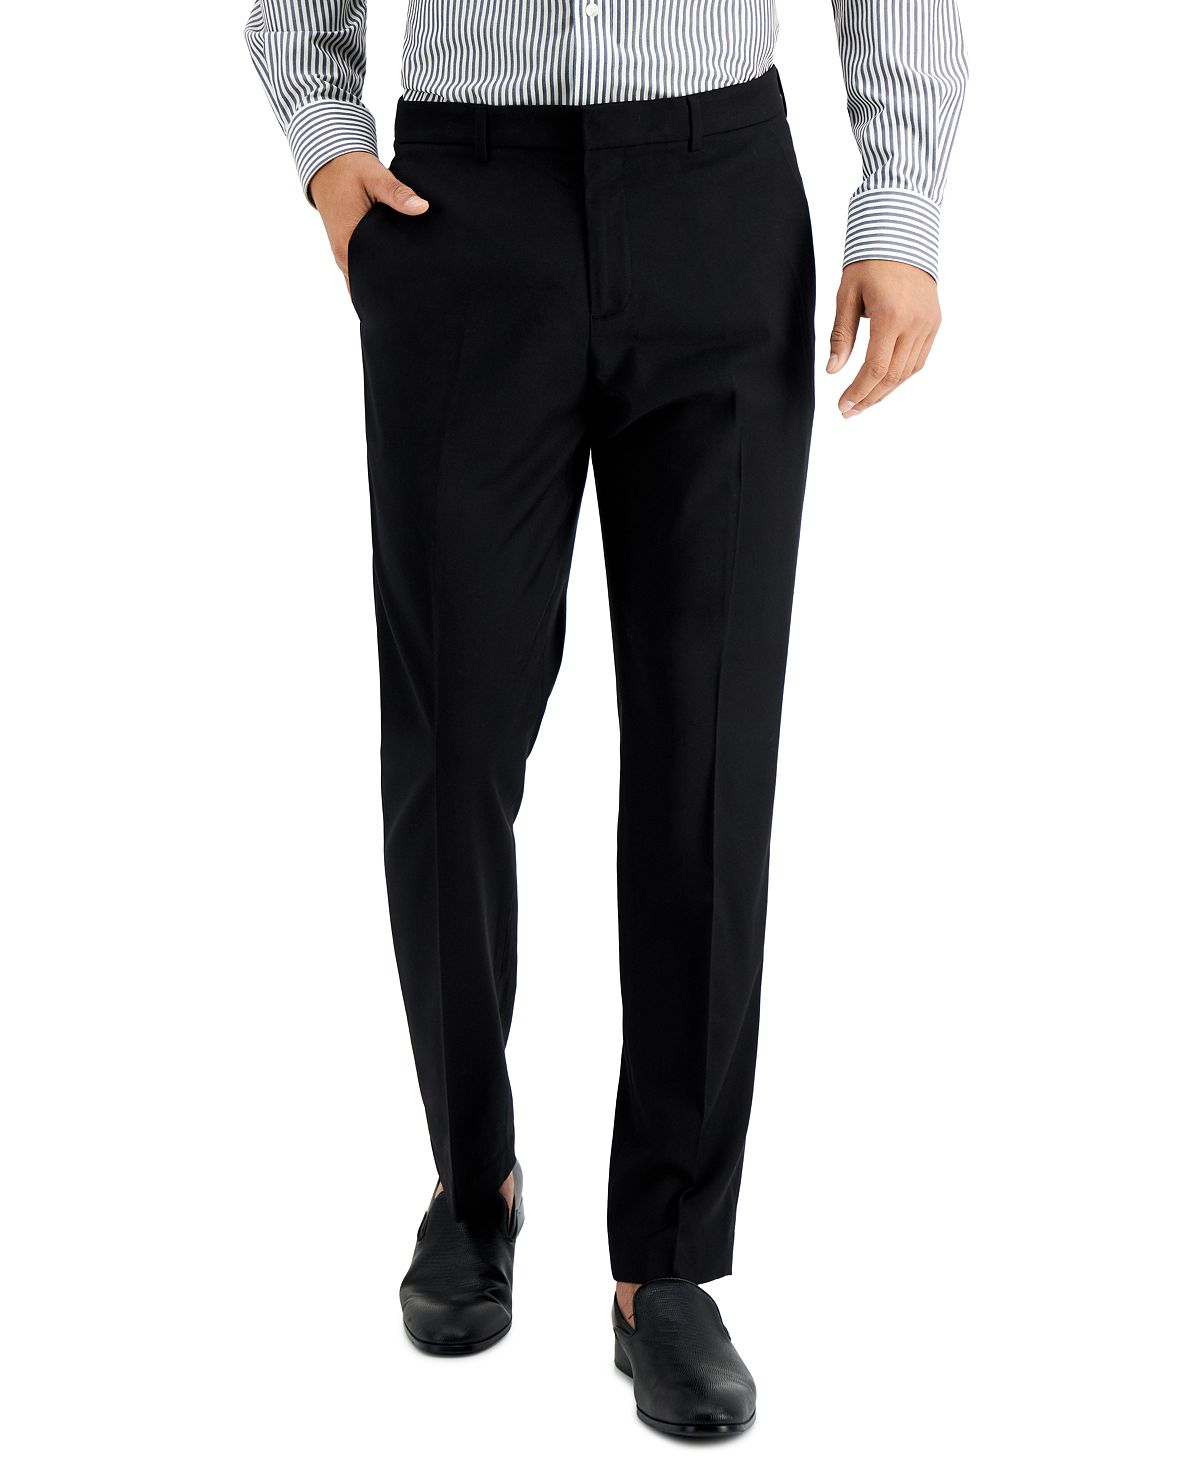 оставайтесь на работе от touson Мужские классические брюки slim fit non-iron performance stretch из меланжевой ткани Perry Ellis Portfolio, черный